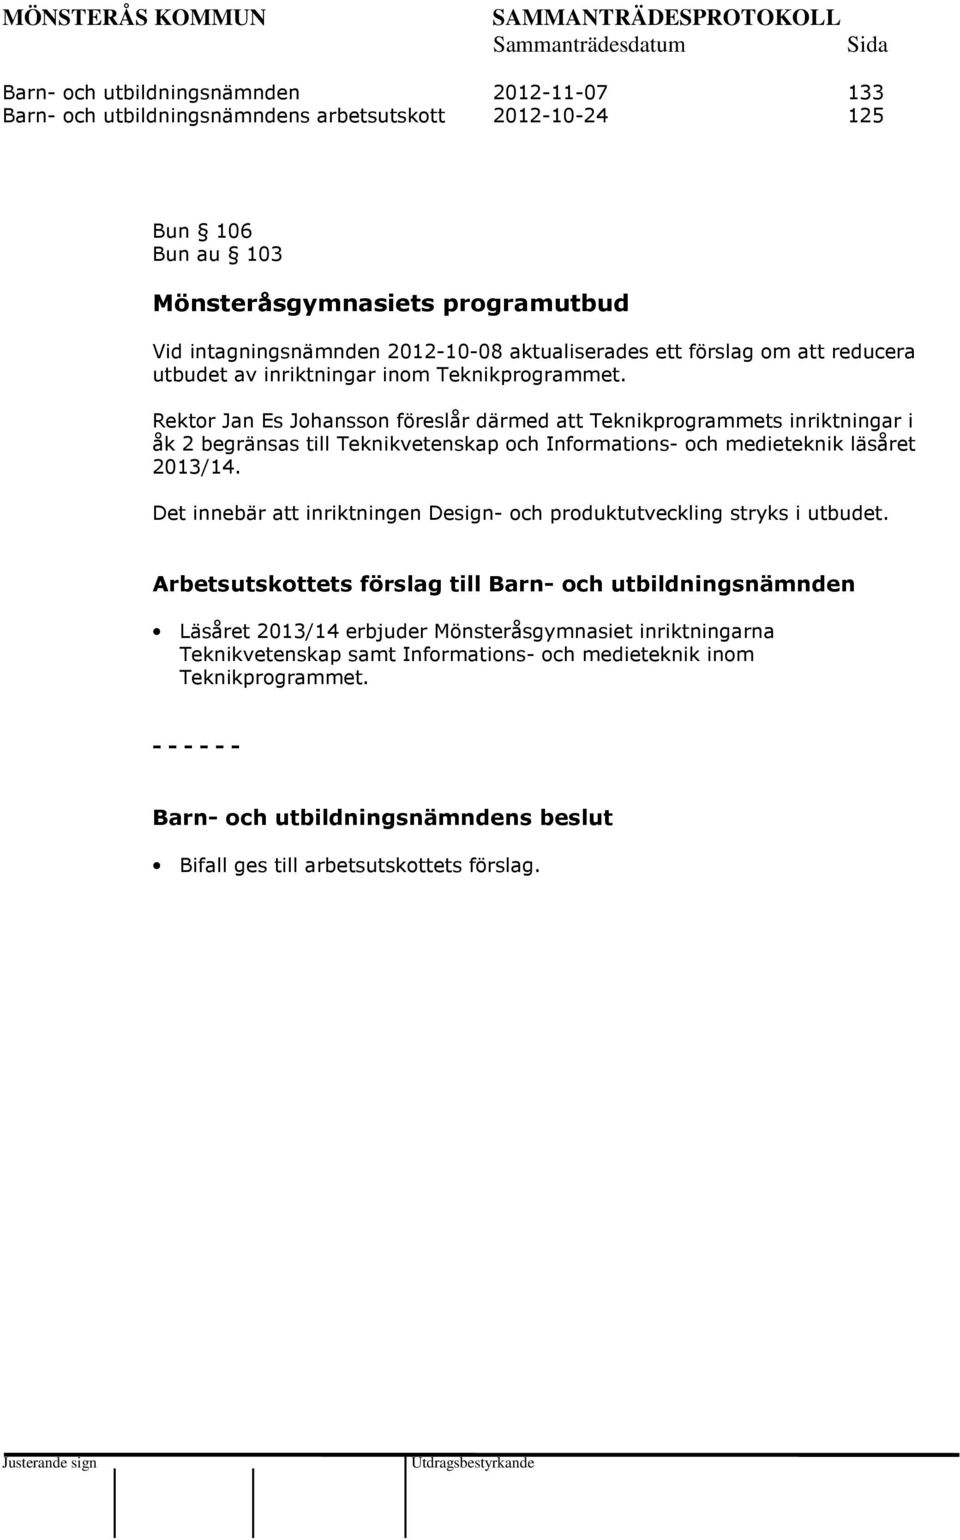 Rektor Jan Es Johansson föreslår därmed att Teknikprogrammets inriktningar i åk 2 begränsas till Teknikvetenskap och Informations- och medieteknik läsåret 2013/14.